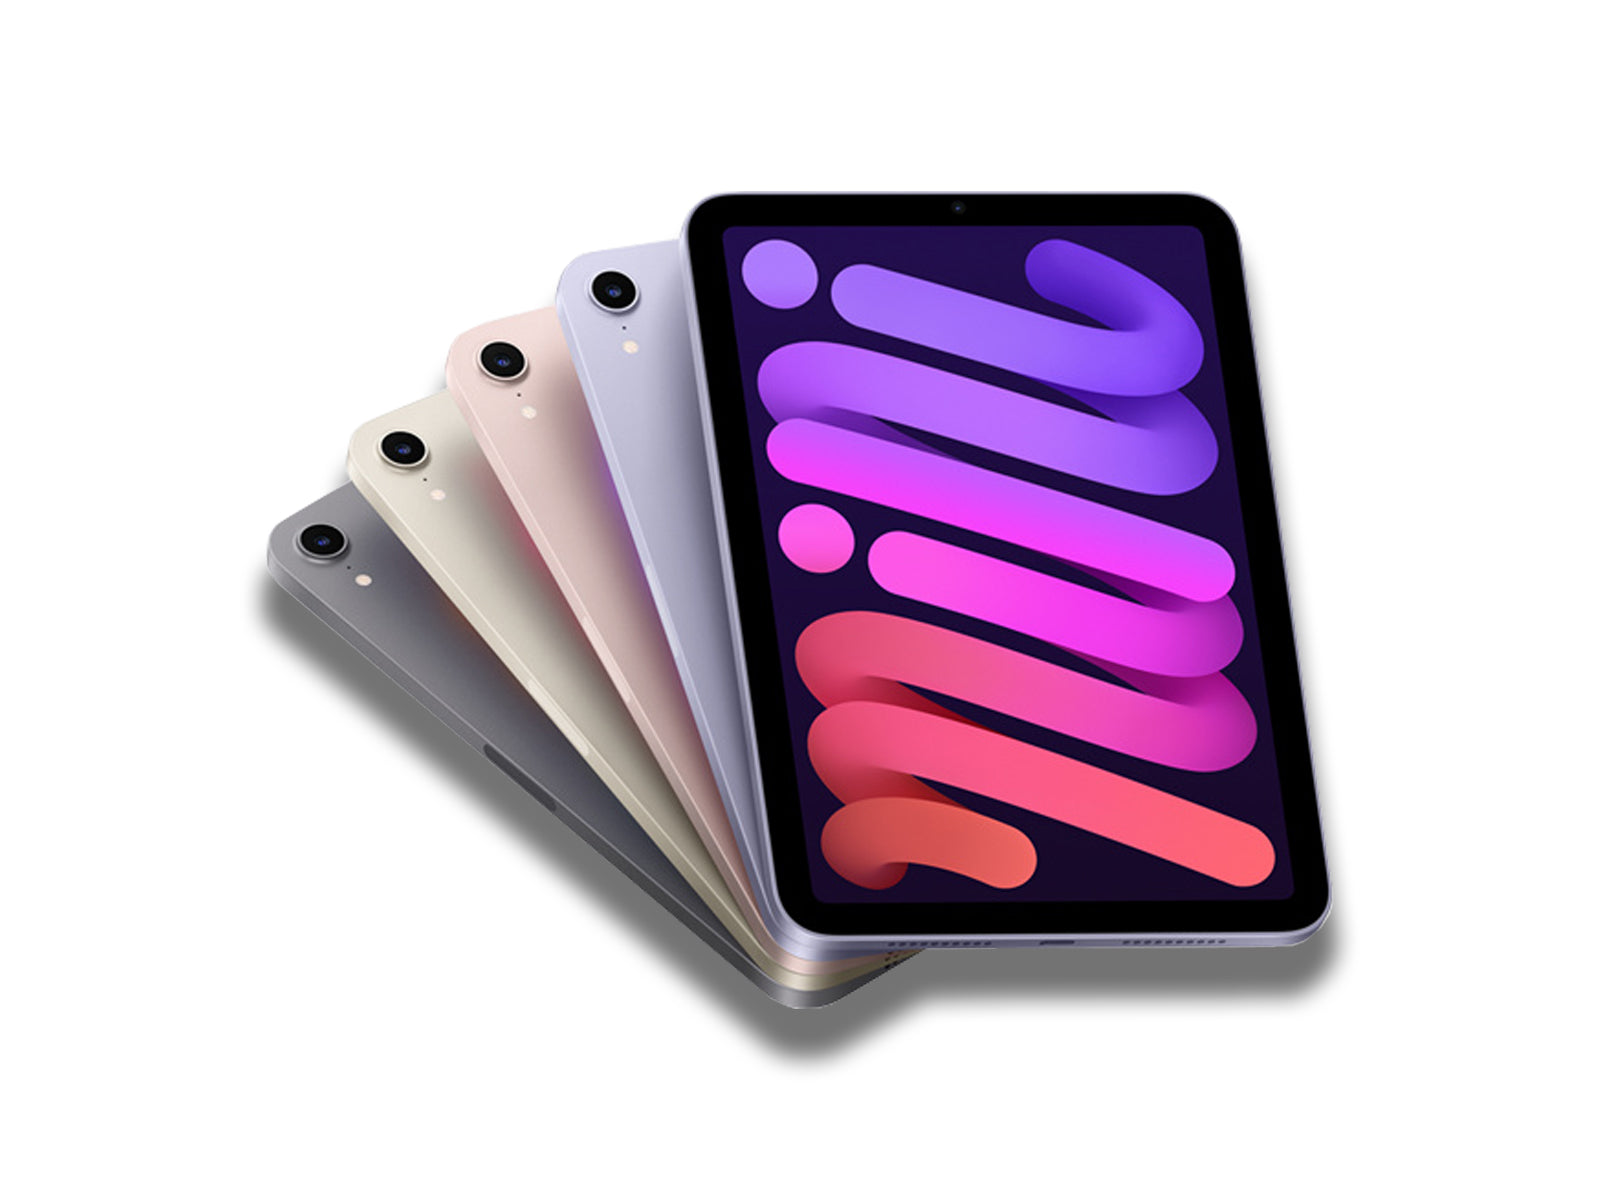 iPad Mini 6 in Space grey, Starlight, Pink, And Purple